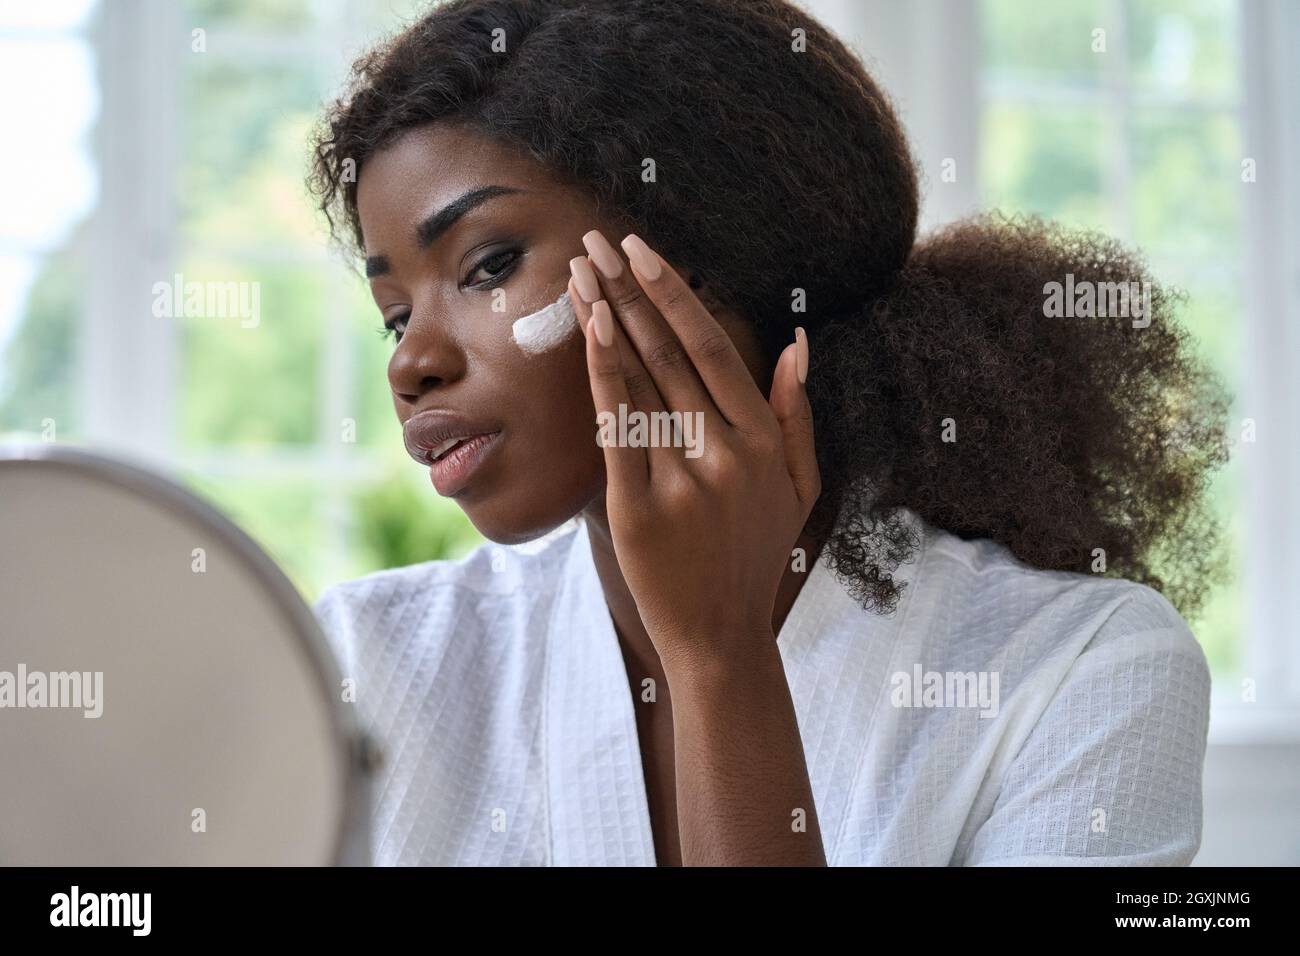 Attraktive schwarze junge Frau, die Creme auf die Gesichtshaut auftragen, die im Spiegel aussieht. Stockfoto